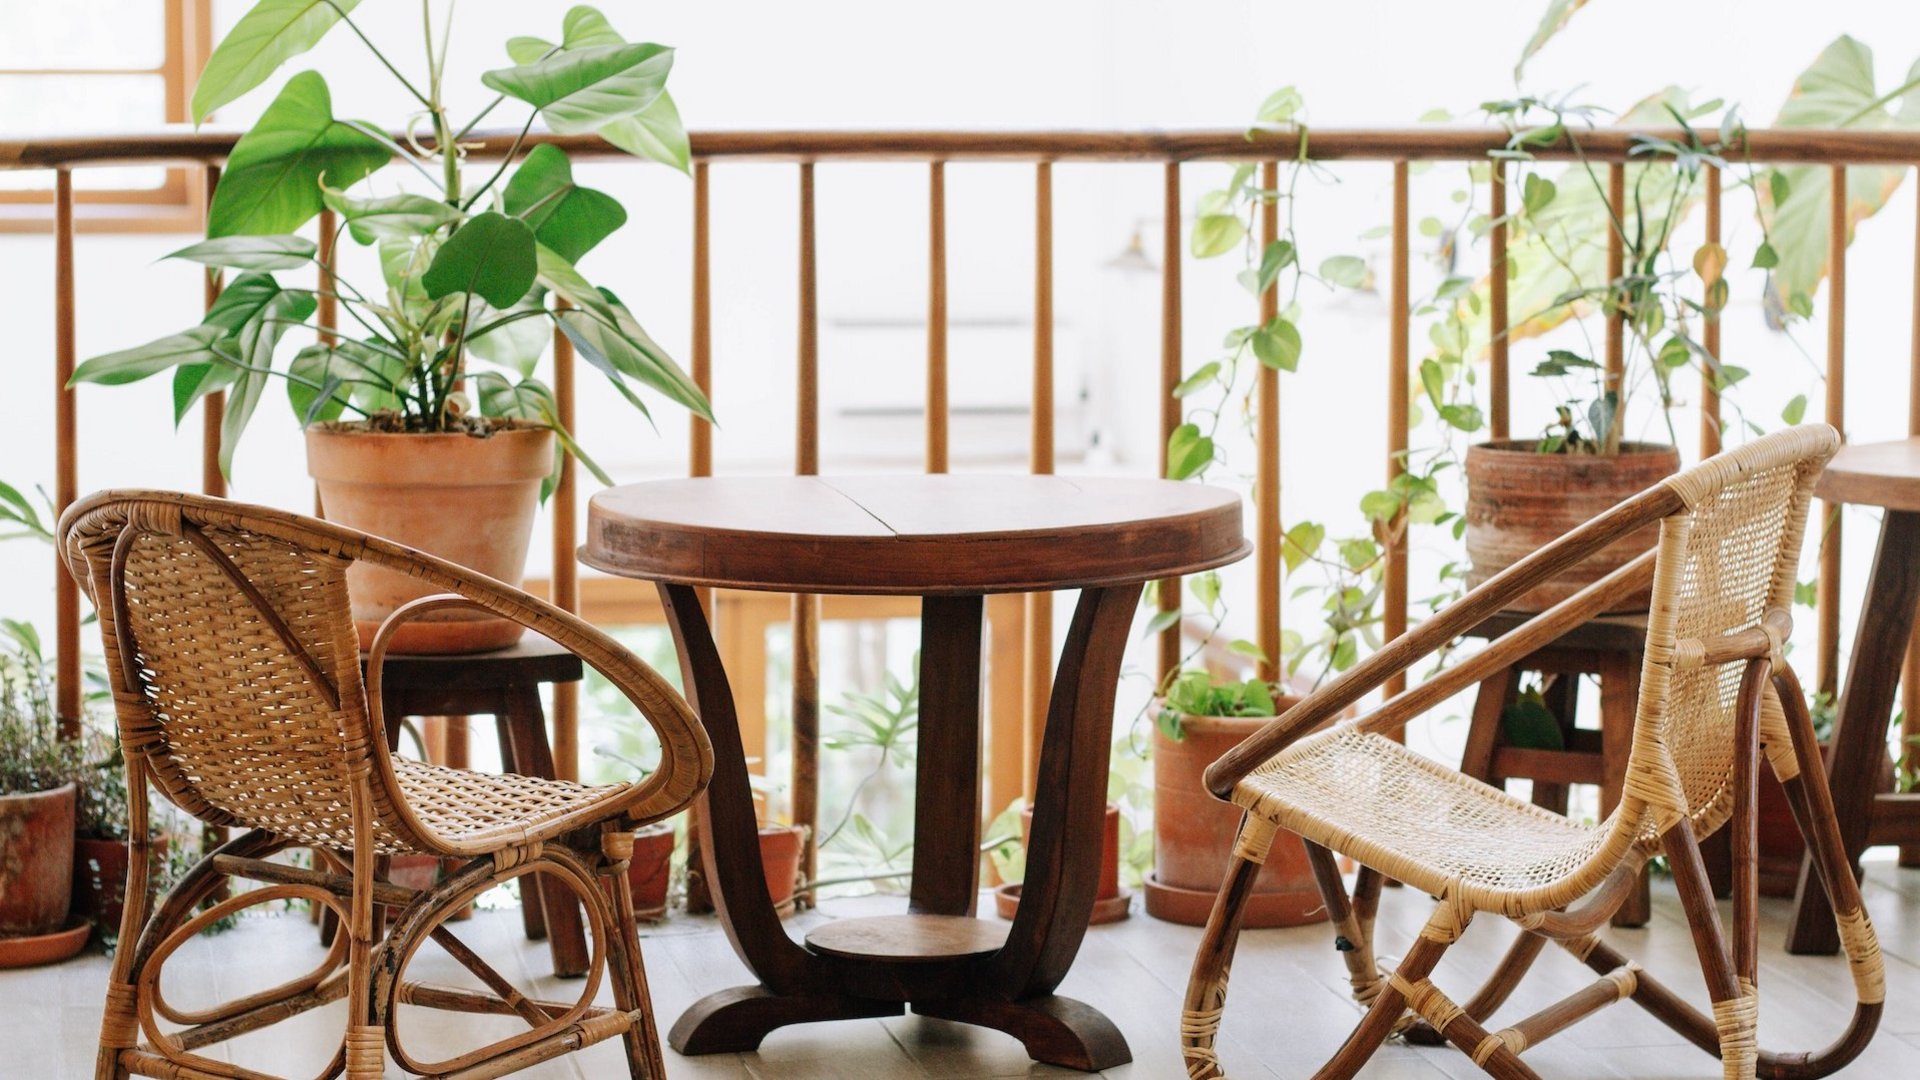 Das Bild zeigt einen Balkon mit einem Tisch, Stühlen und grünen Pflanzen.